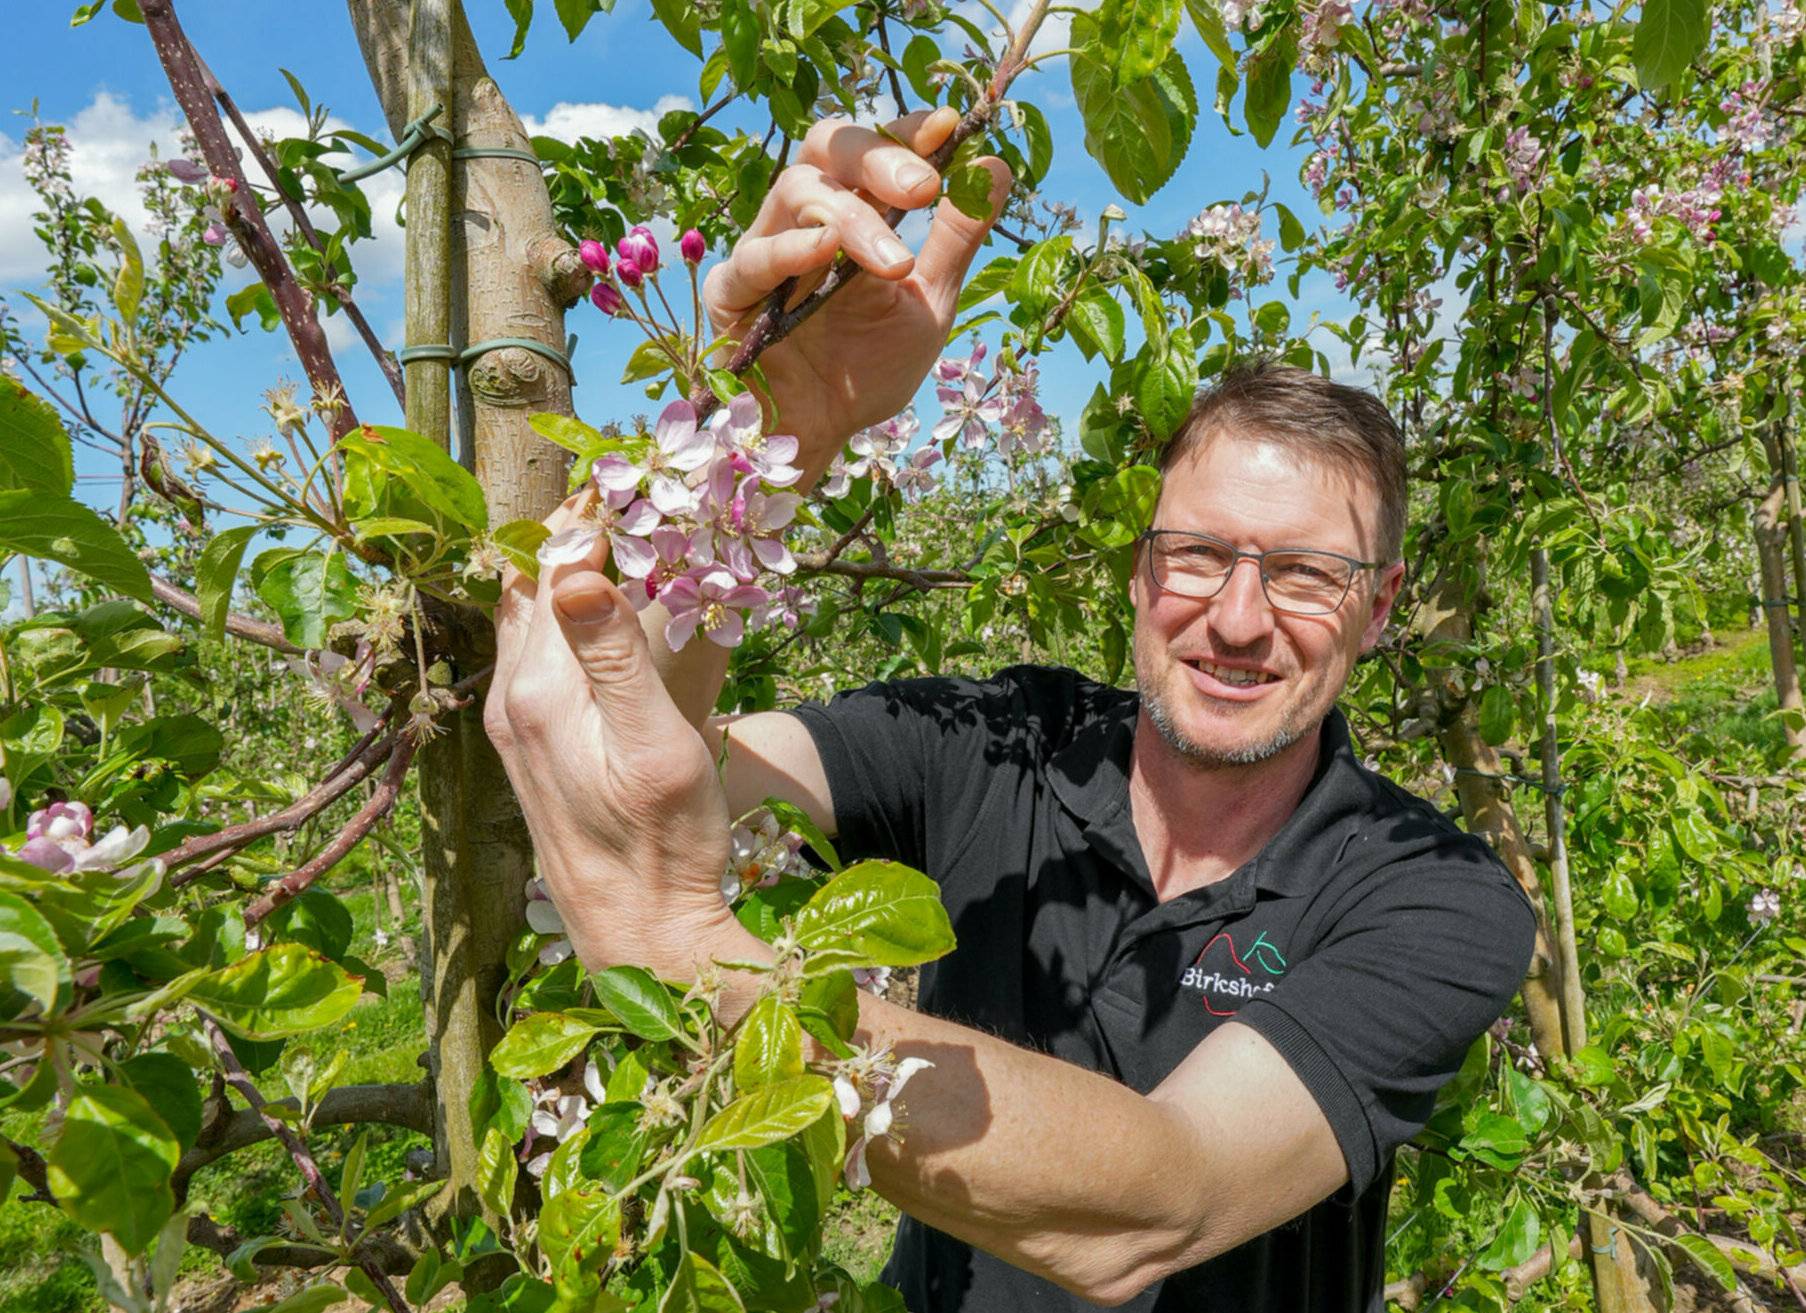 Auf dem Birkshof ist noch alles im grünen Bereich. Nicht die Blüten seien so empfindlich, sondern die Früchte im ganz frühen Stadium, sagt Obstbauer Heinz-Josef Hütten. 